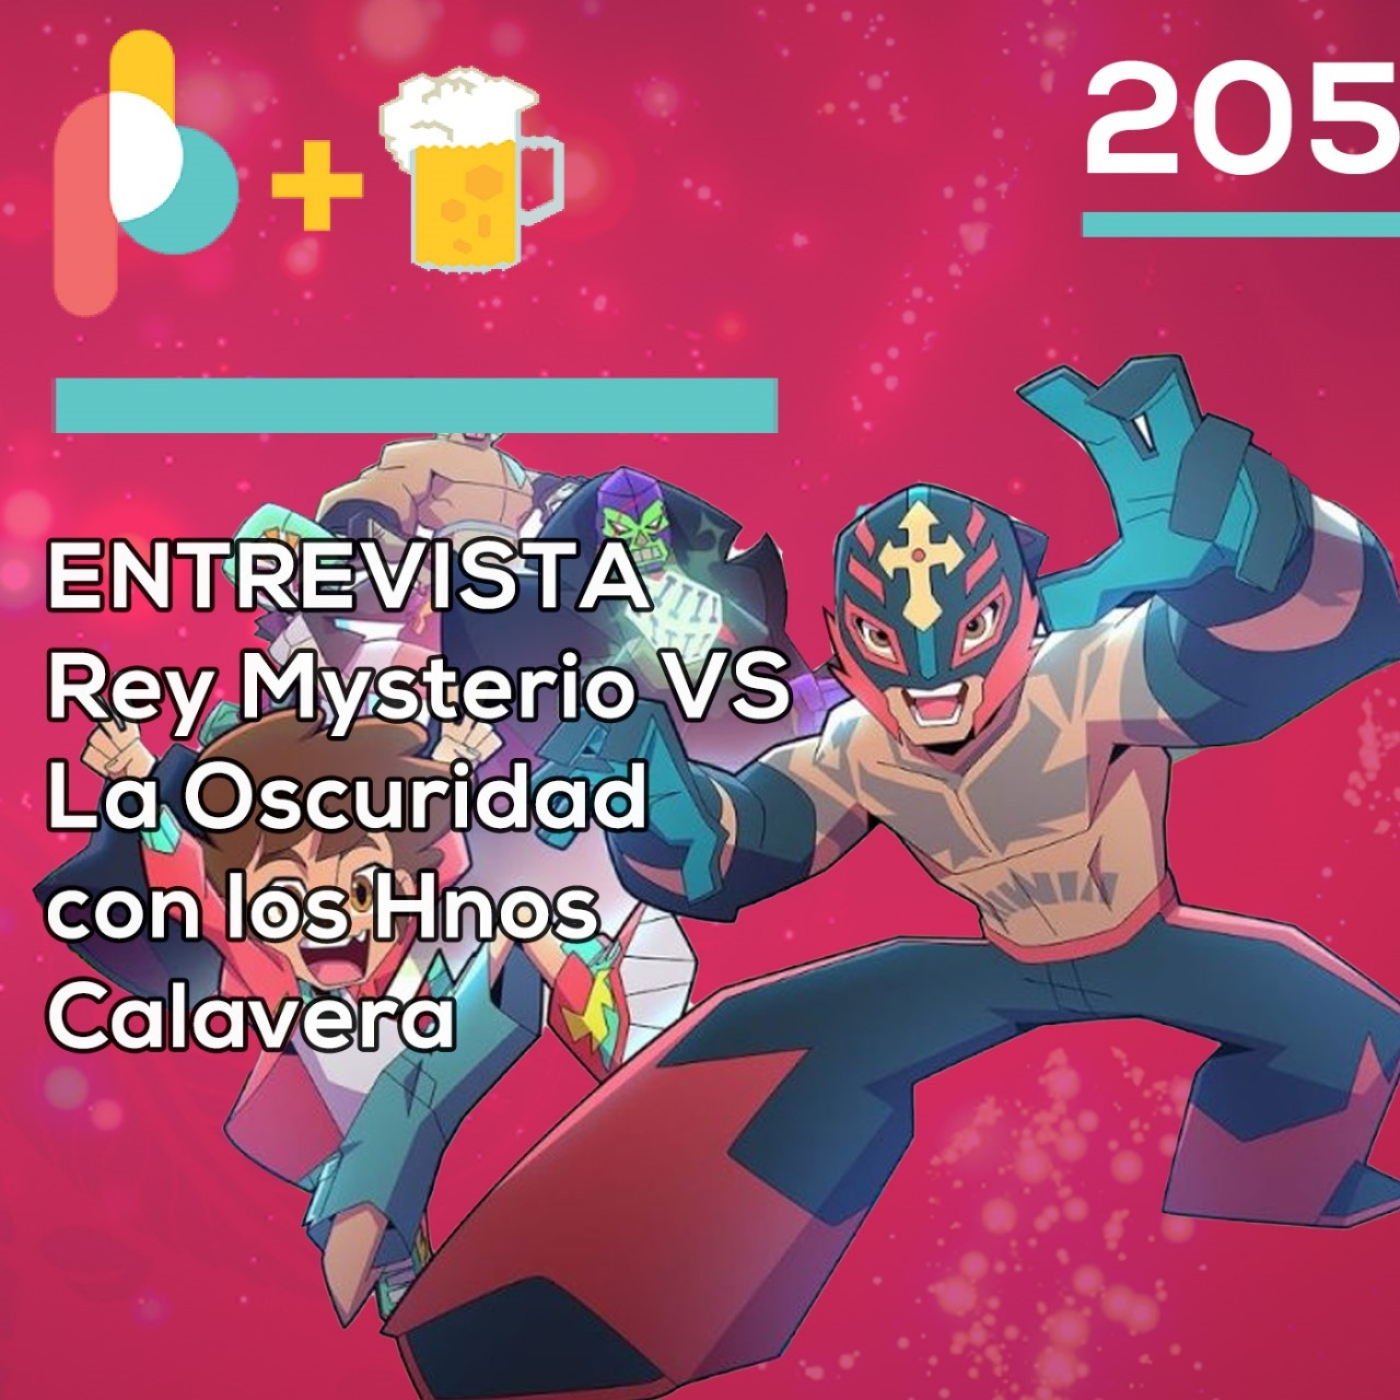 Pixelbits con cerveza 205: Entrevista con Los Hermanos Calavera sobre Rey Mysterio VS La Oscuridad